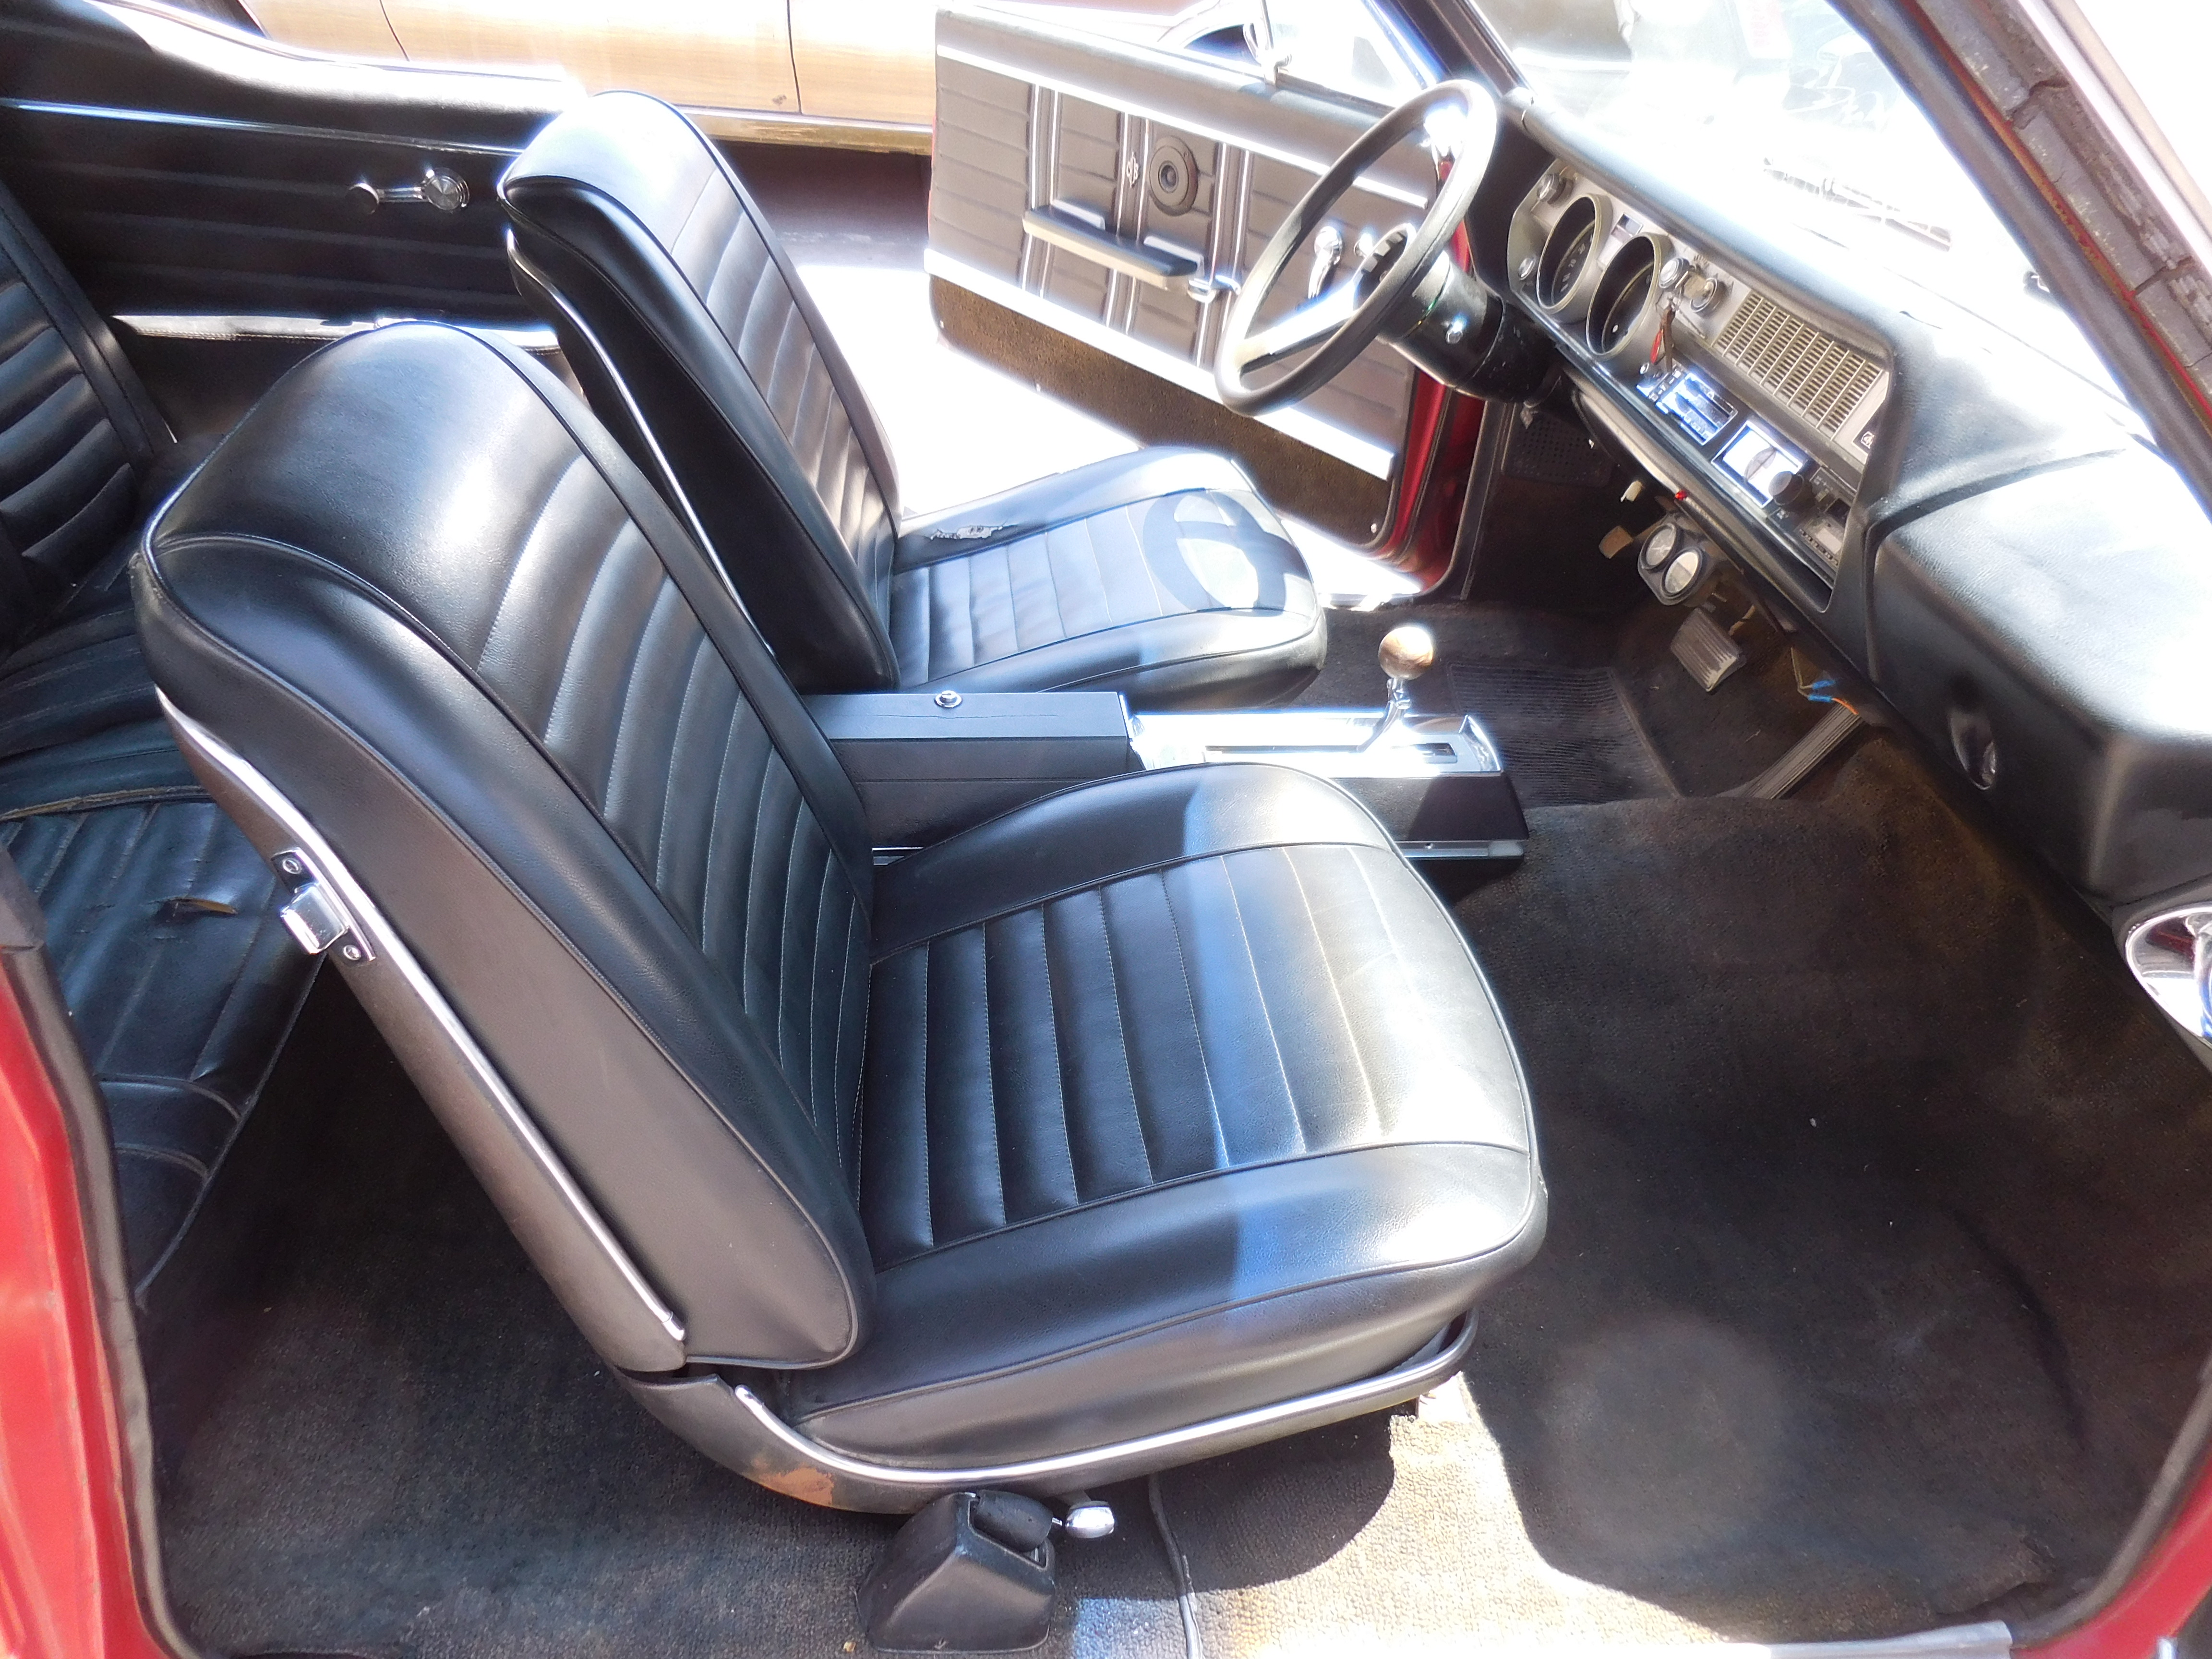 1967, cutlass, 442, 455 12,bolt,th400,bucket seats, center console,